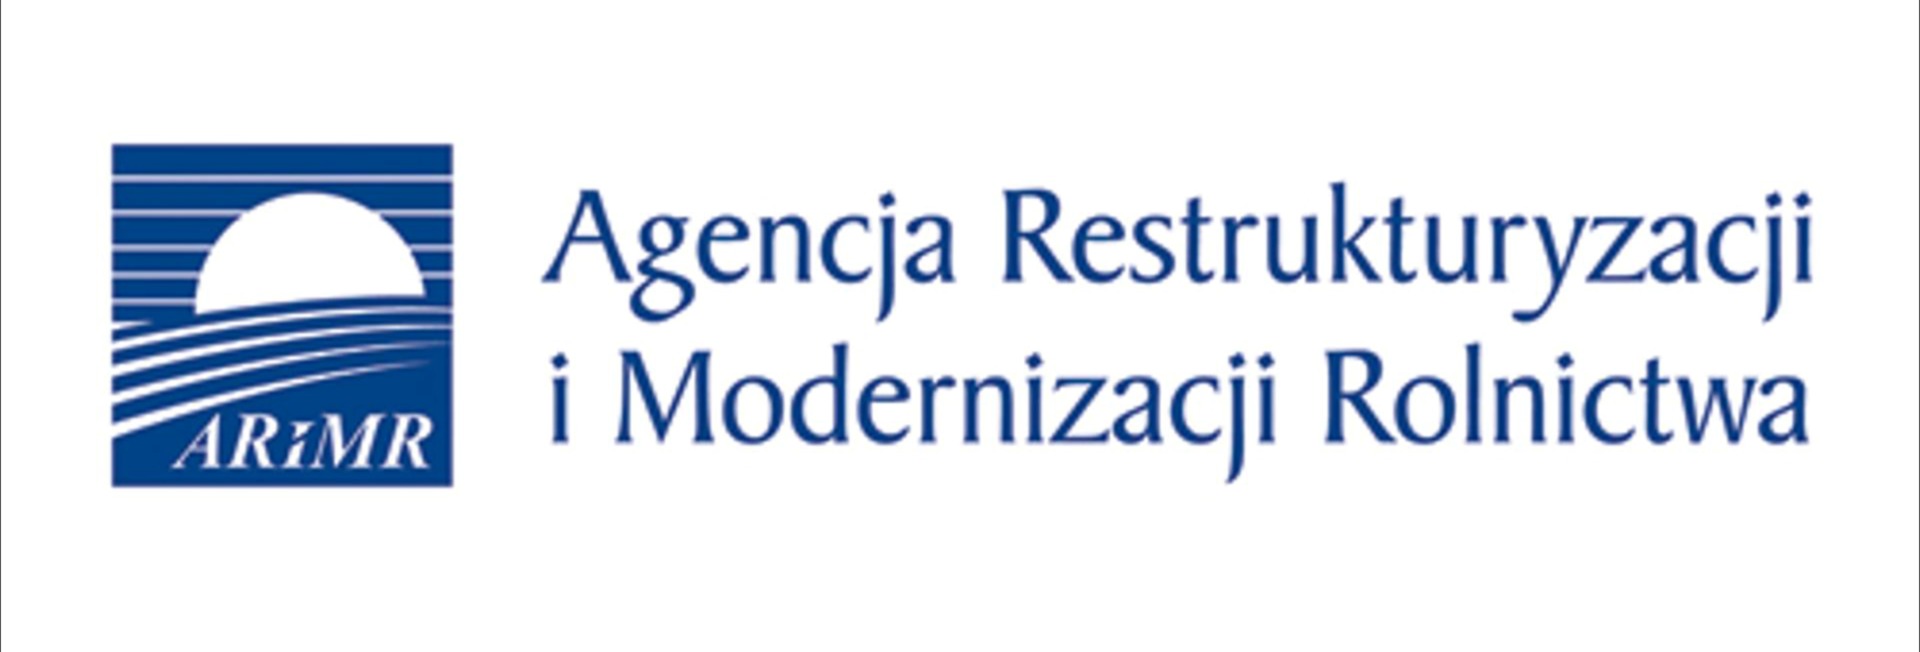 logotyp Agencji Restrukturyzacji i Modernizacji Rolnictwa